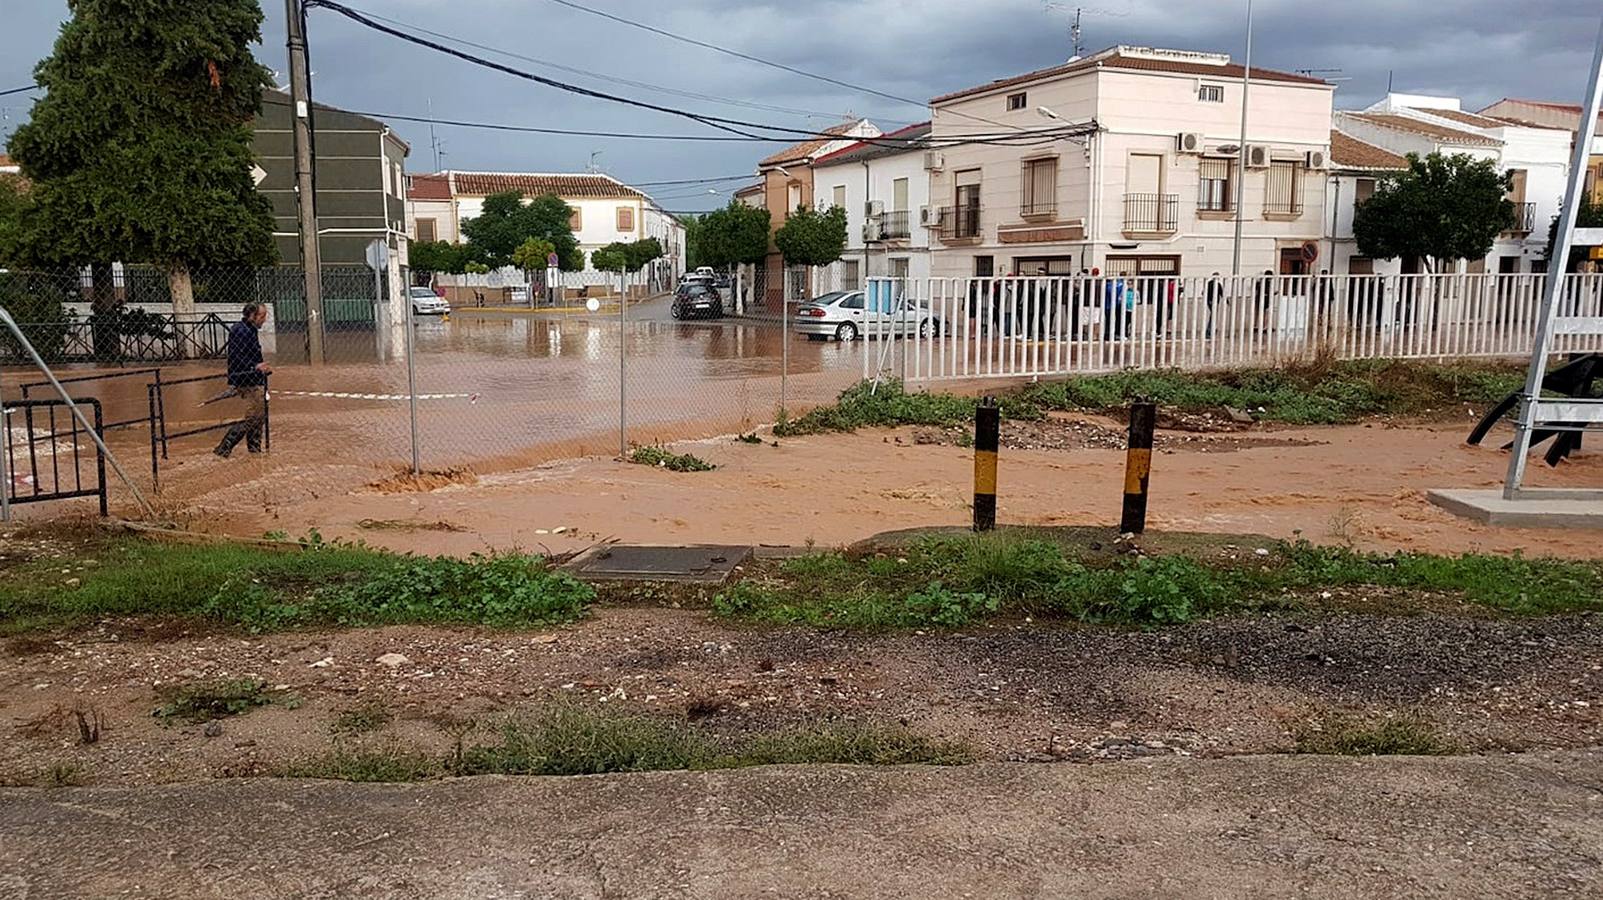 Una de las viviendas afectadas en La Roda de Andalucía (Sevilla) por las fuertes lluvias de la pasada madrugada, donde han sido evacuados varios vecinos por la crecida del río Yeguas